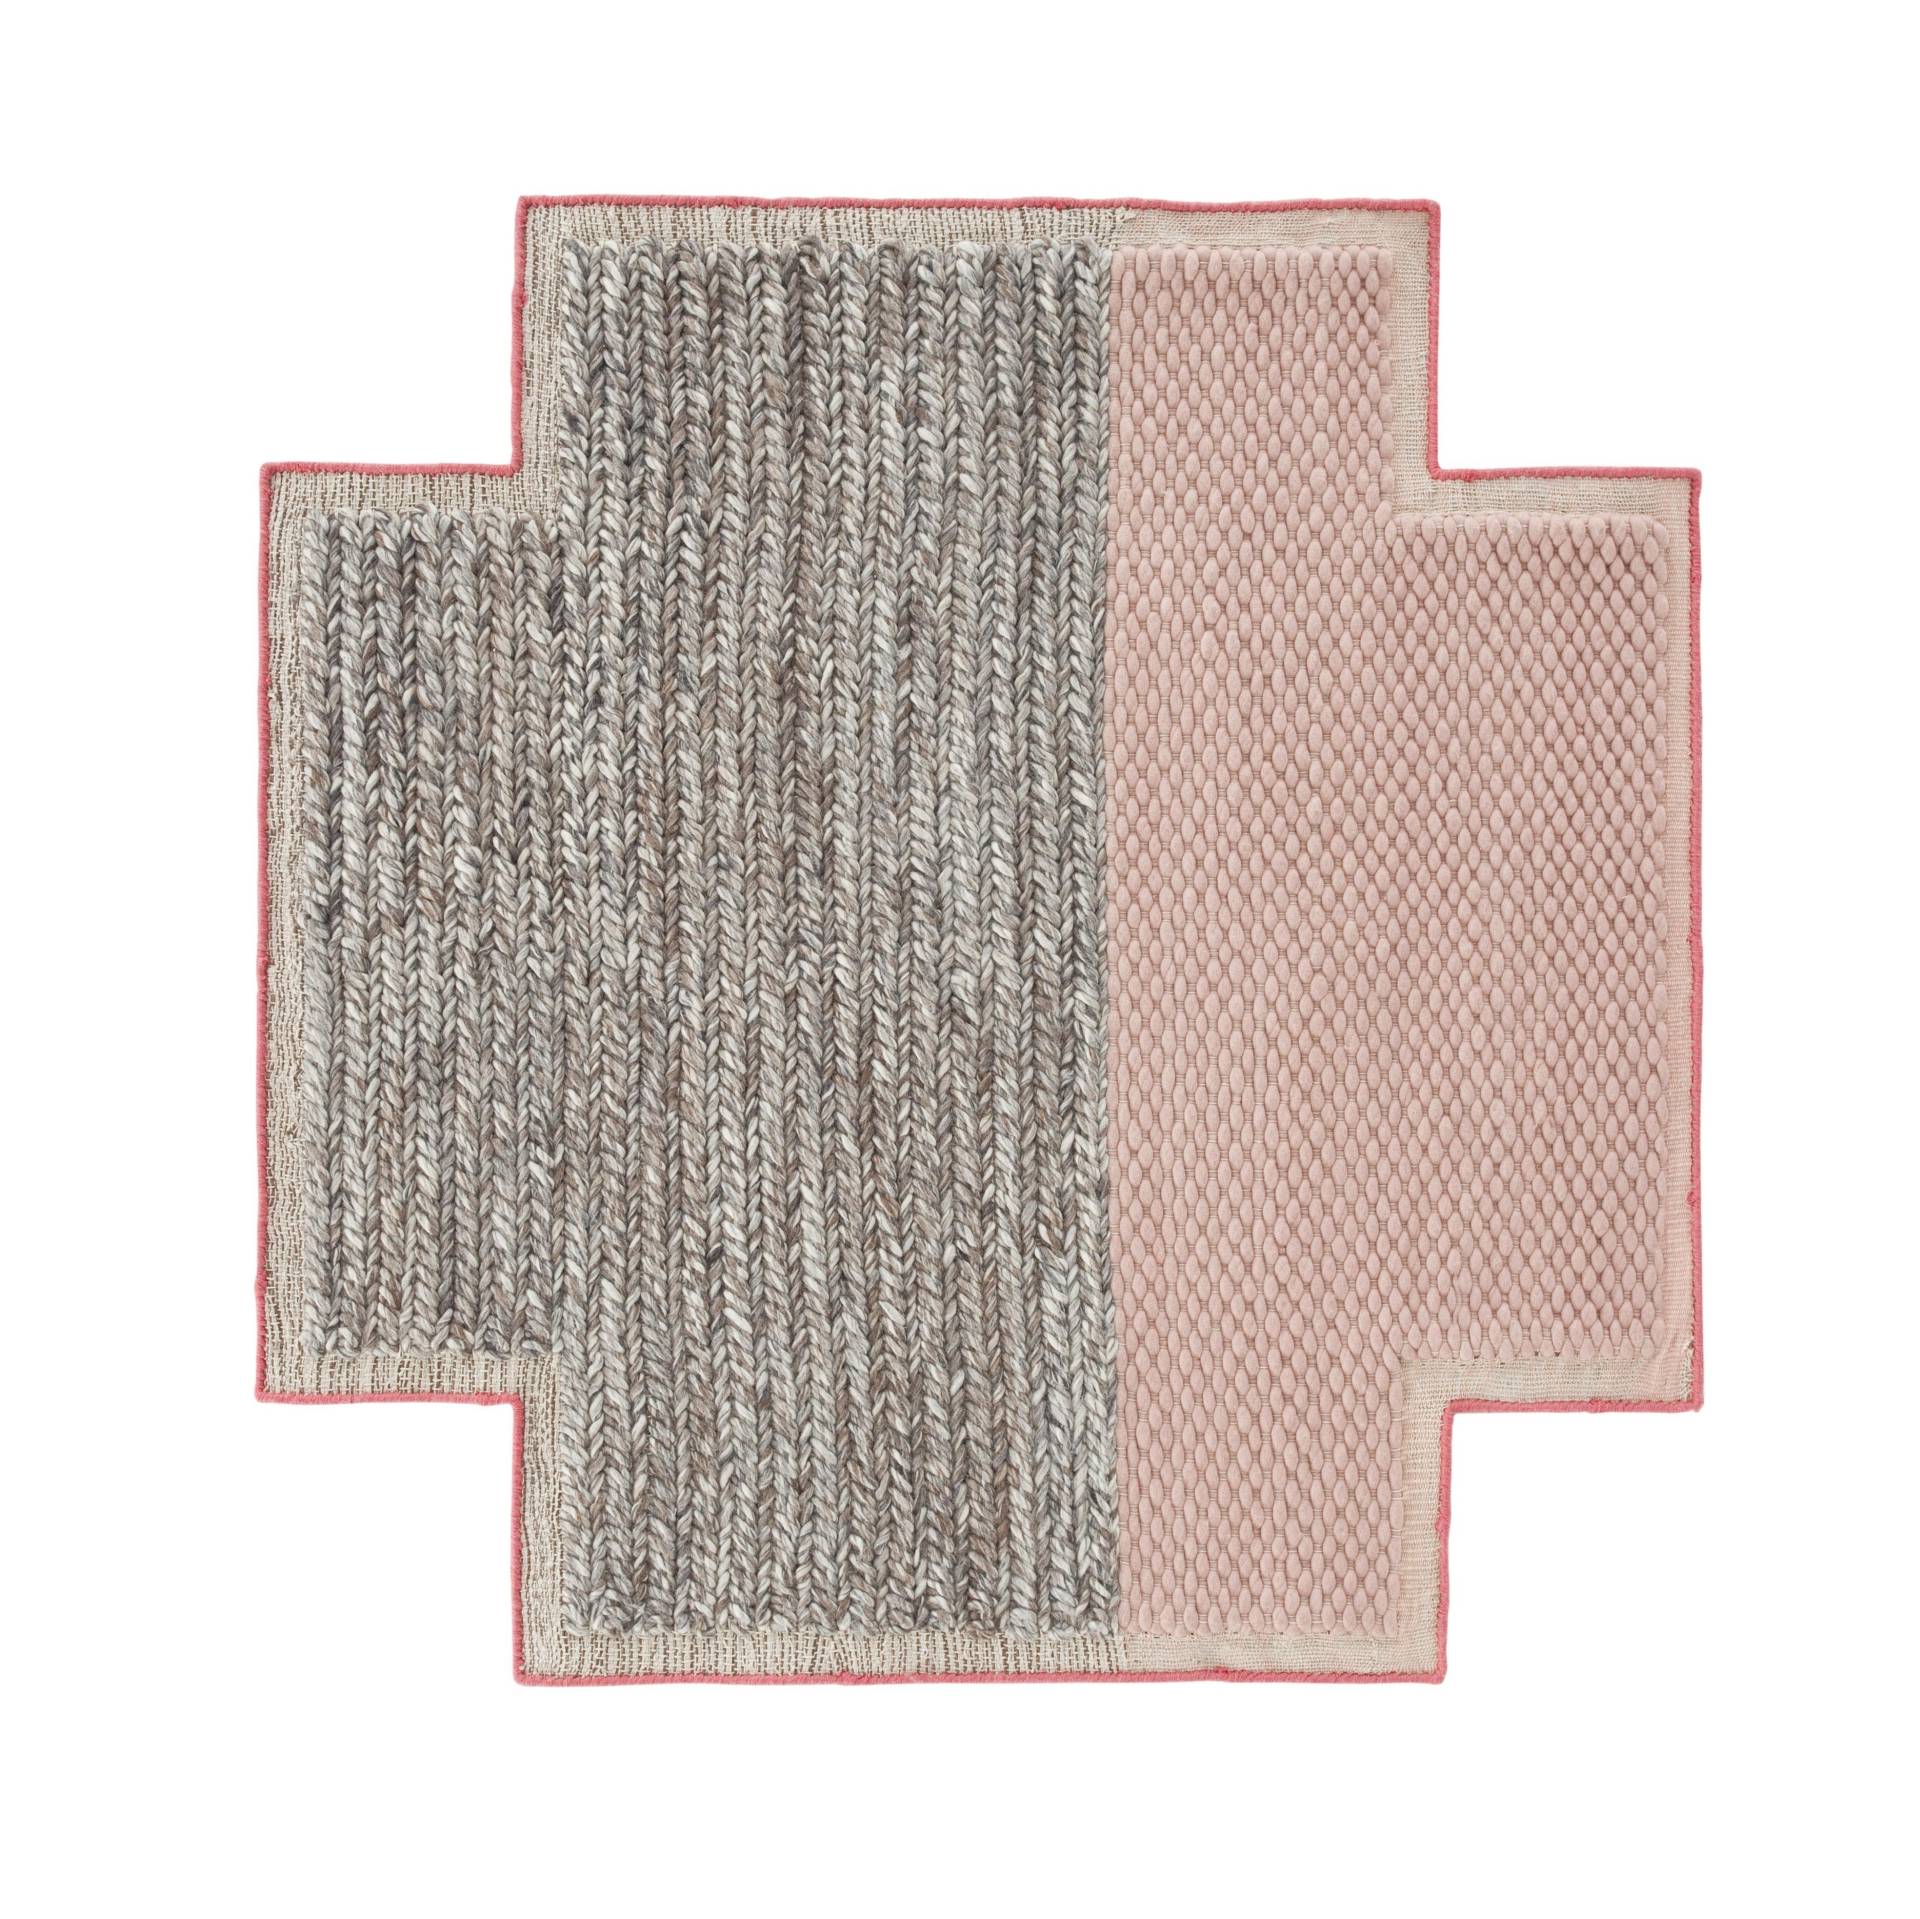 GAN - Mangas Space Square Teppich - pink/grau geflochten/100% neue Wolle/von Hand gewebt/160x160cm von GAN